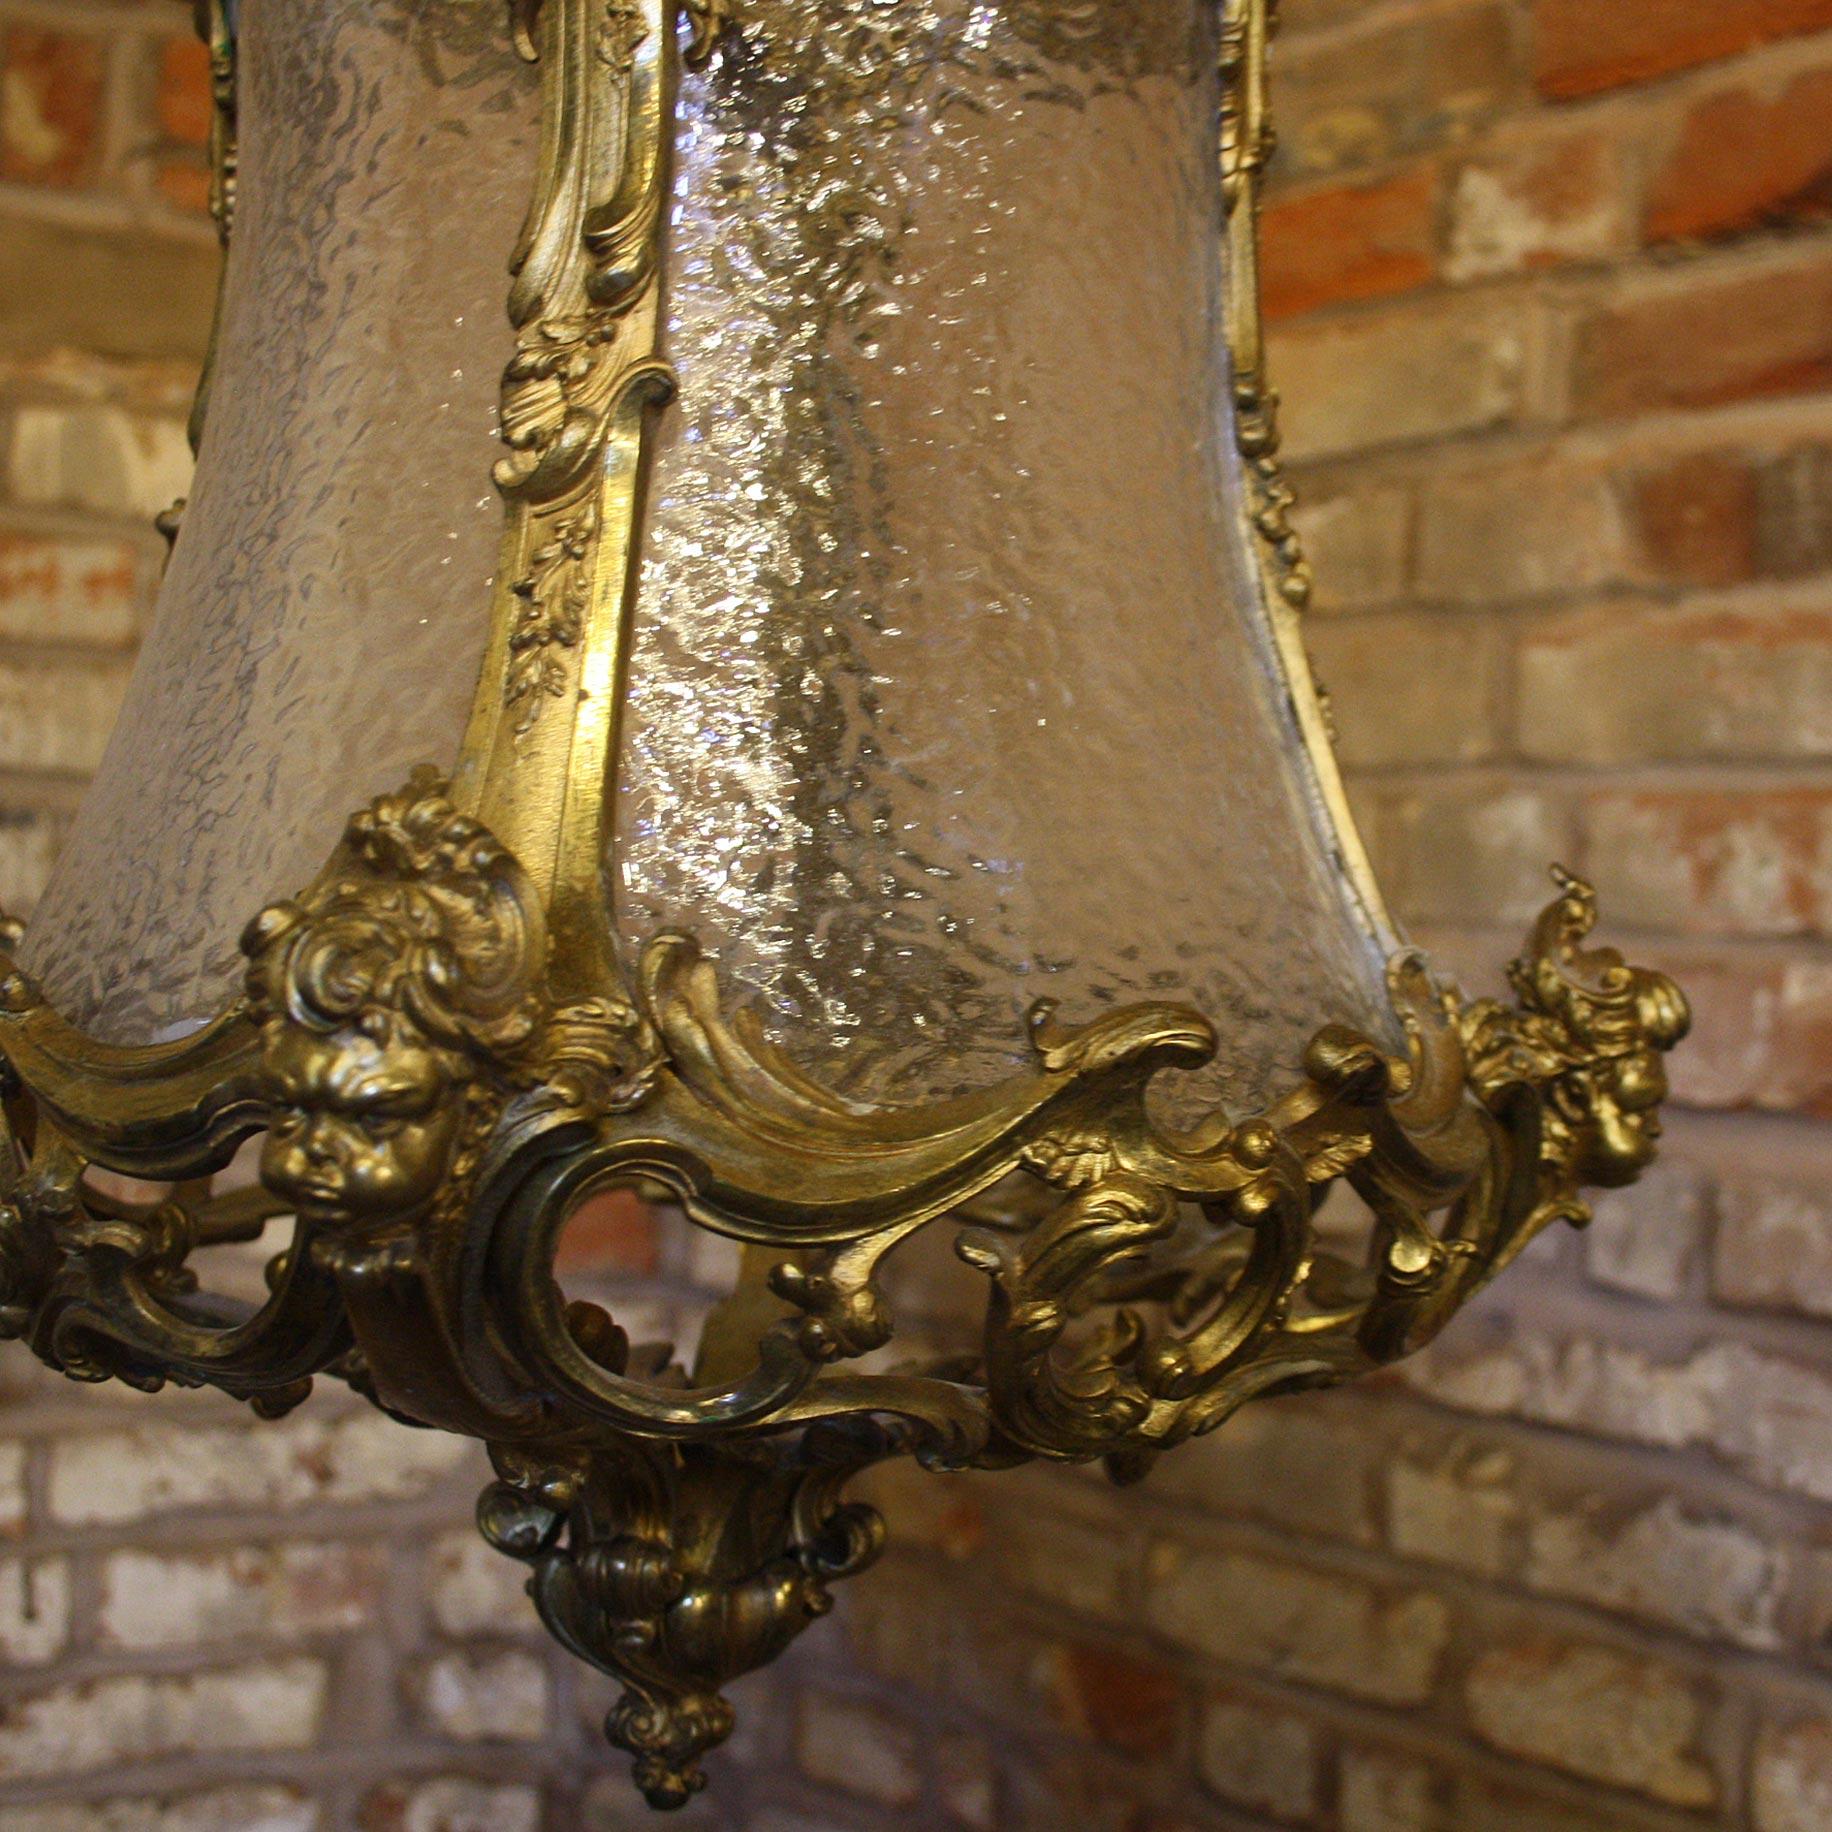 Eine außergewöhnliche antike Laterne aus dem 19. Jahrhundert, vollständig restauriert und mit Originalglas.

Das vergoldete Metall ist von höchster Qualität, wie man an den Cherub-Hörkeln sehen kann, die um die Laterne herum angebracht